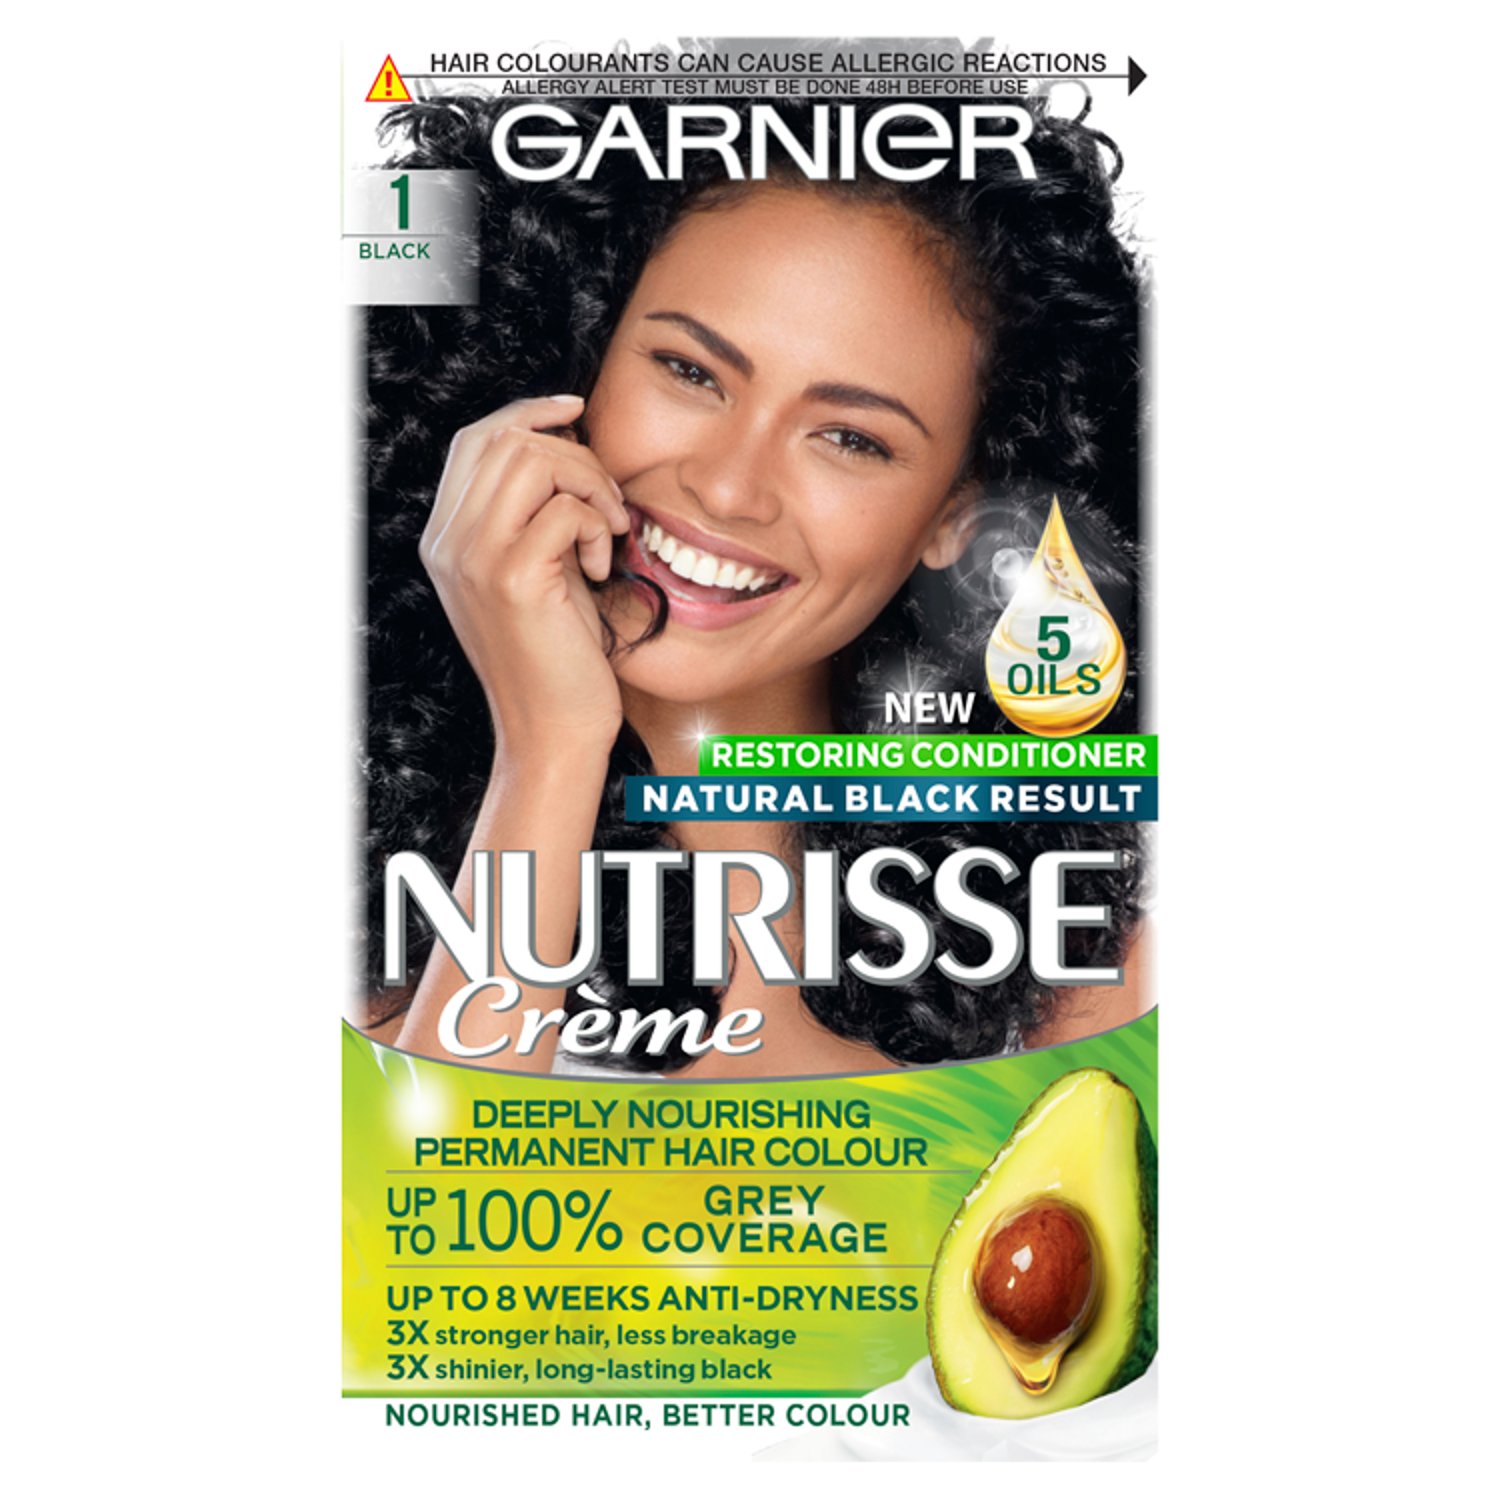 Garnier Nutrisse Crème Permanent Nourishing Black Hair Colour (1 Piece)